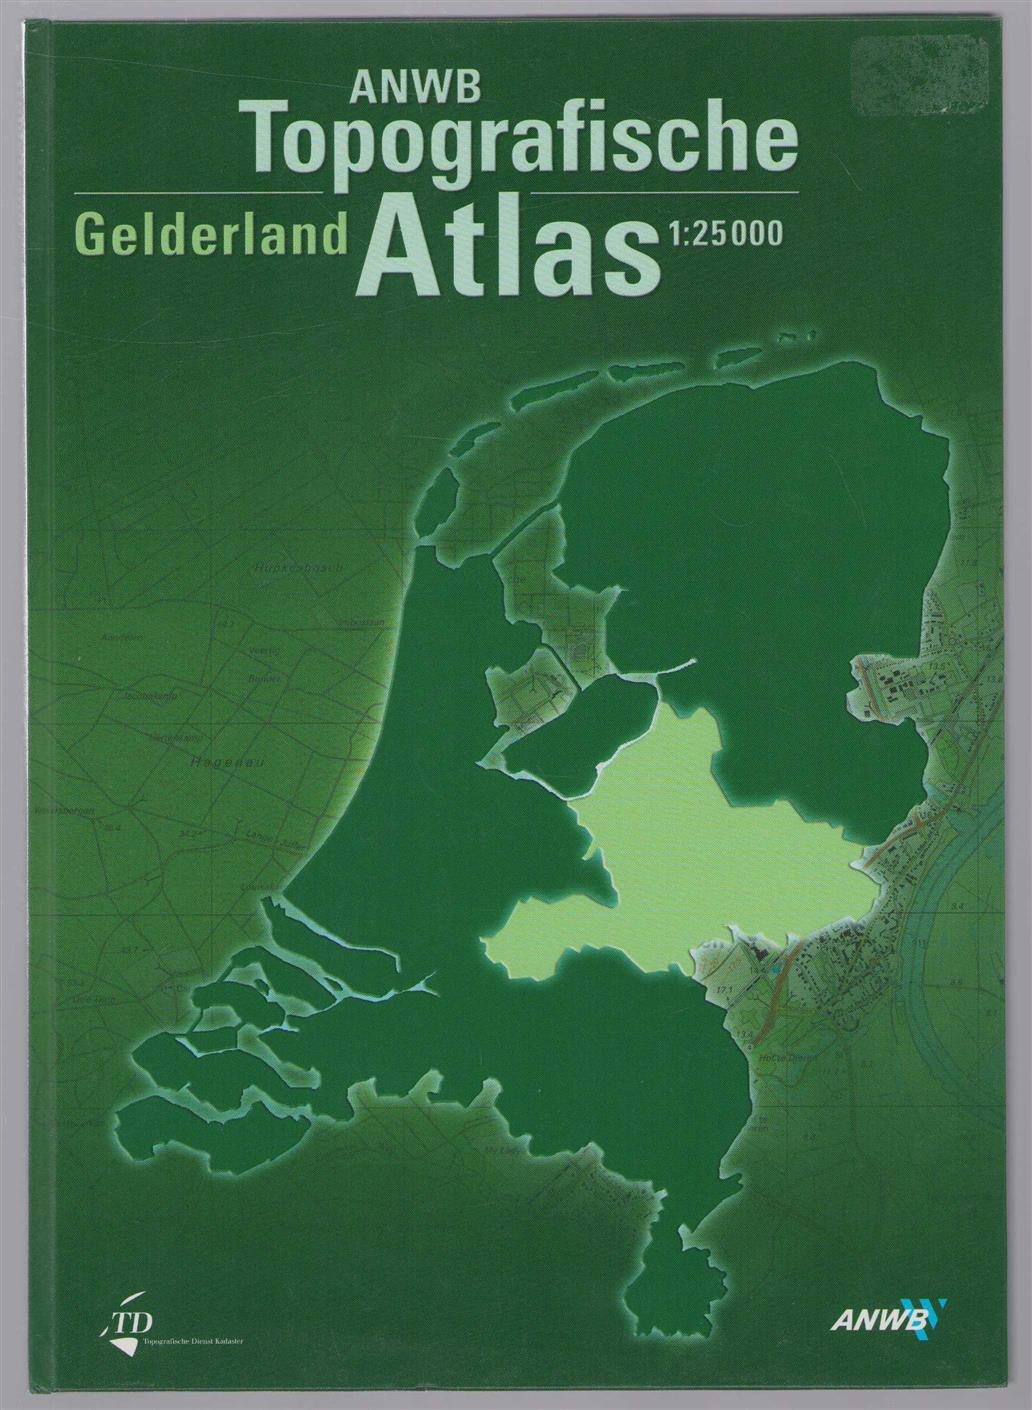 Maarten Boddaert - ANWB topografische atlas: Gelderland.